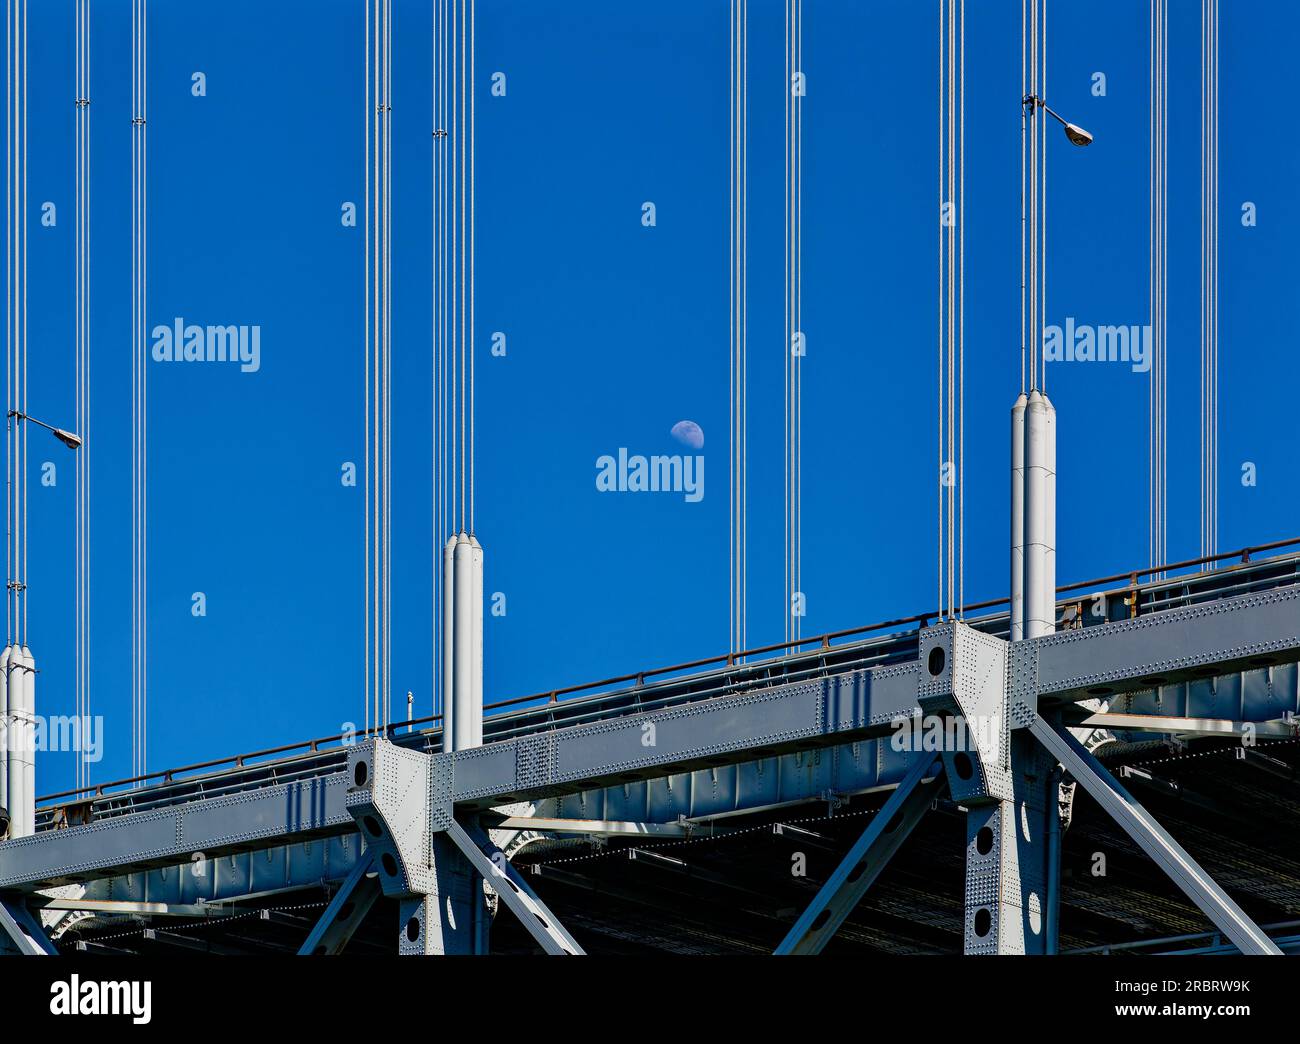 Die Verrazzano-Narrows Bridge verbindet New Yorks Brooklyn mit Staten Island. Die Hängebrücke war die längste Spanne der Welt, als sie 1964 gebaut wurde. (Lebendige Farben) Stockfoto